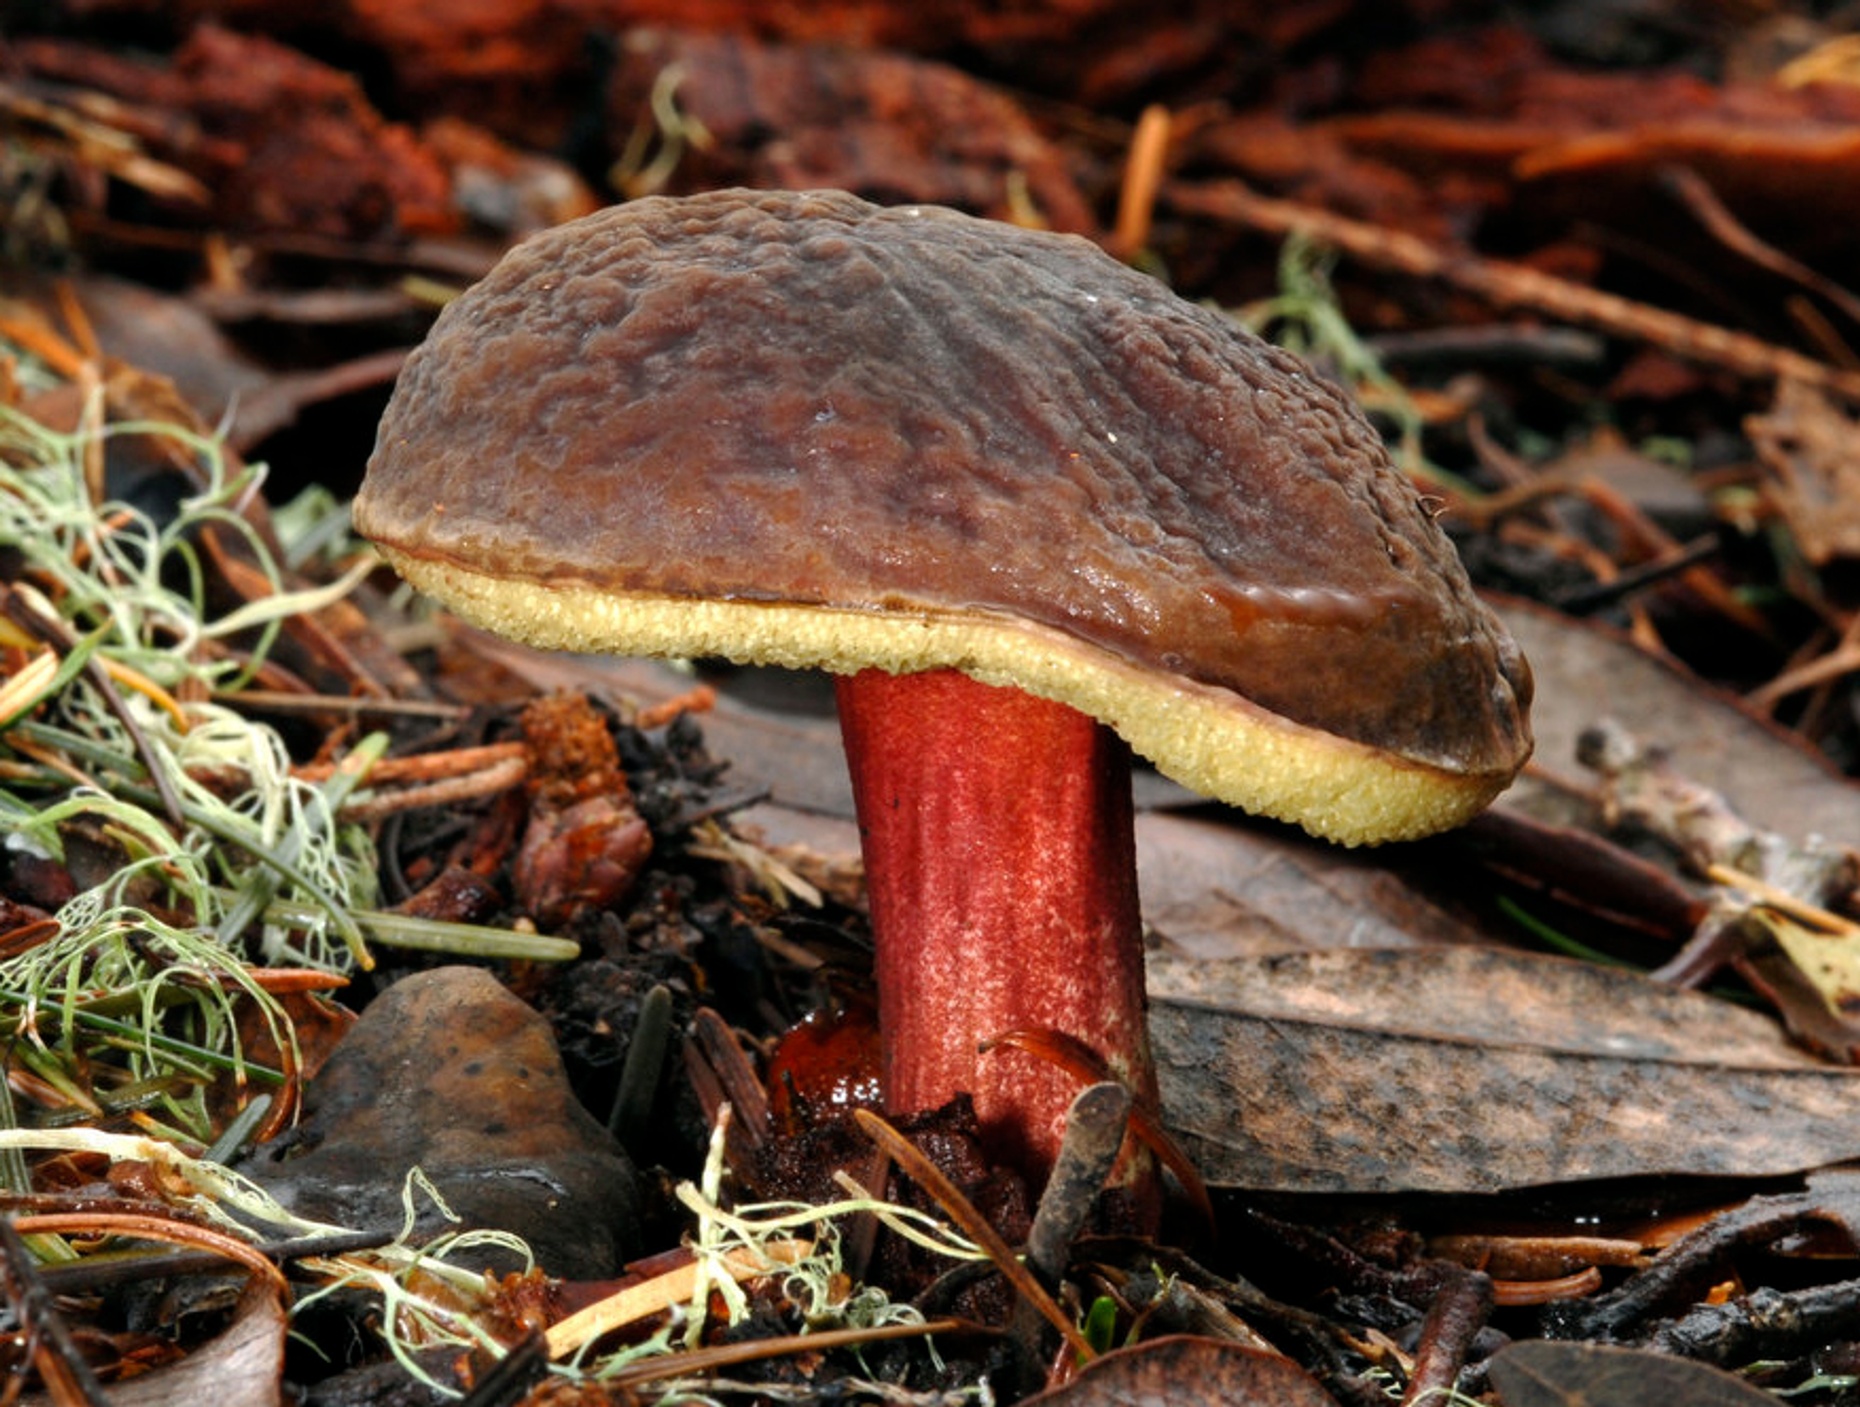 Marin Coast Mushroom Foraging Adventure